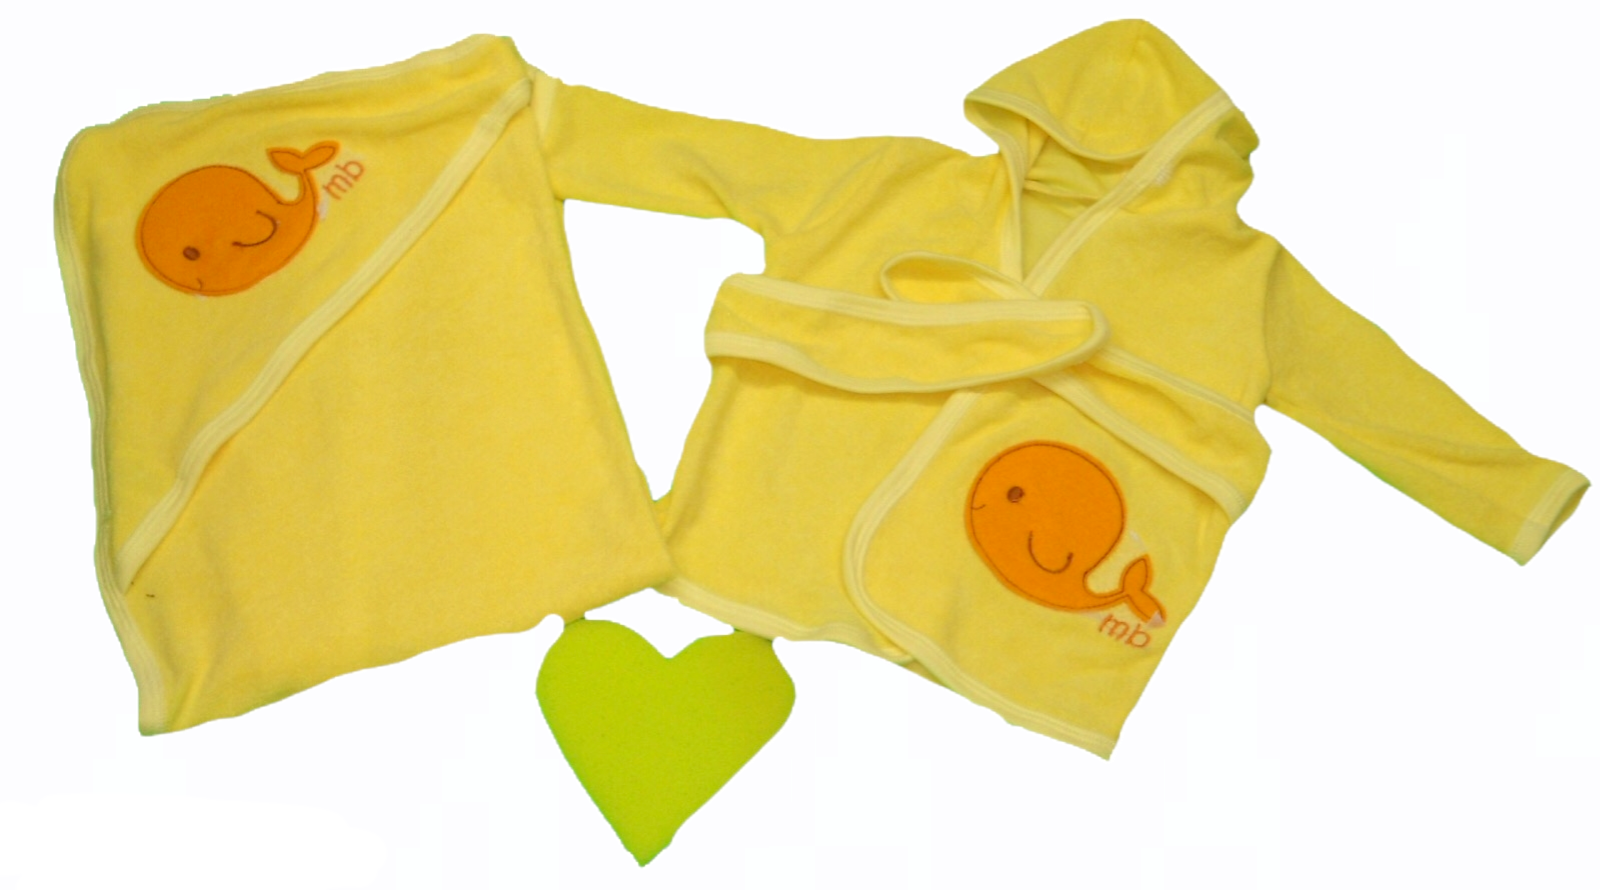 Bata de bebé amarilla  comprar bata de bebé amarilla